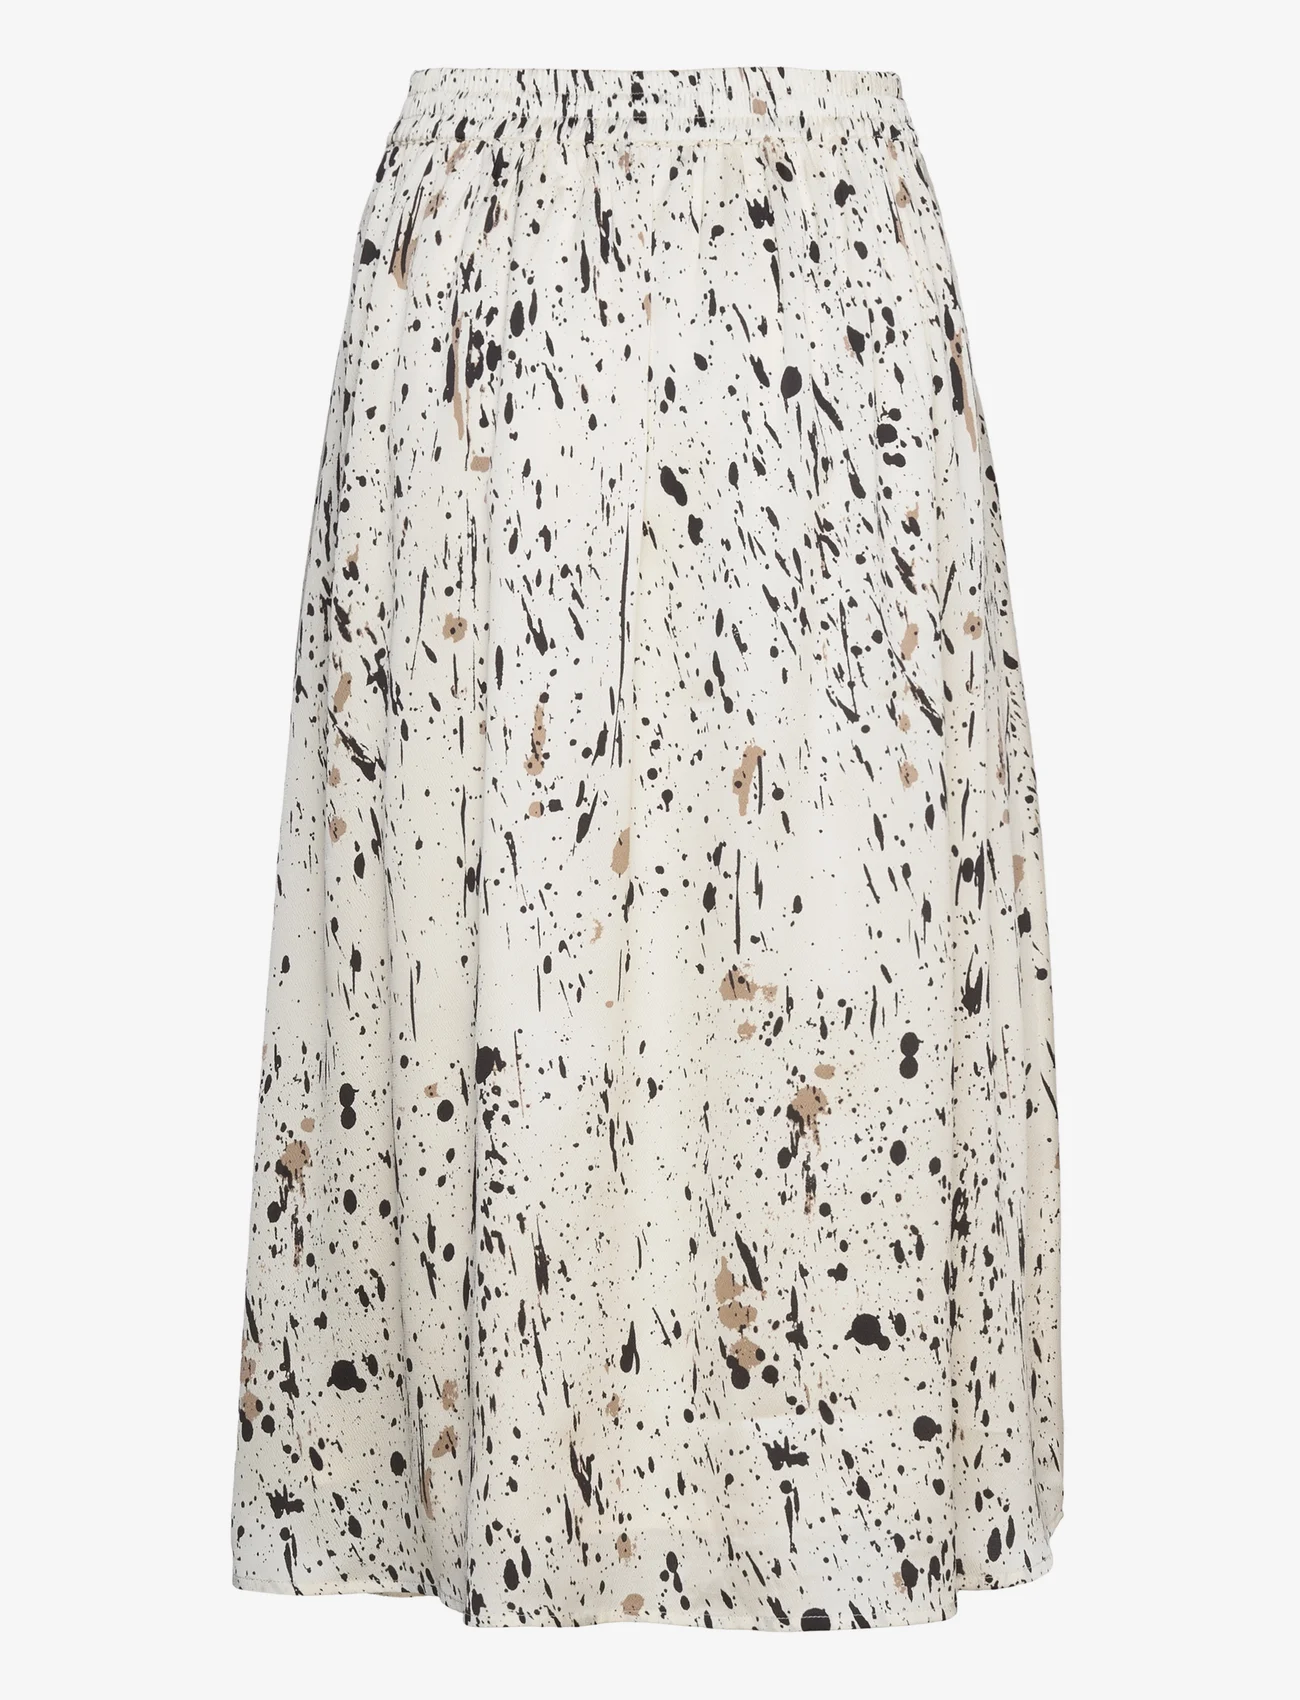 Bruuns Bazaar - AcaciaBBAmattas skirt - vidutinio ilgio sijonai - paint print - 1